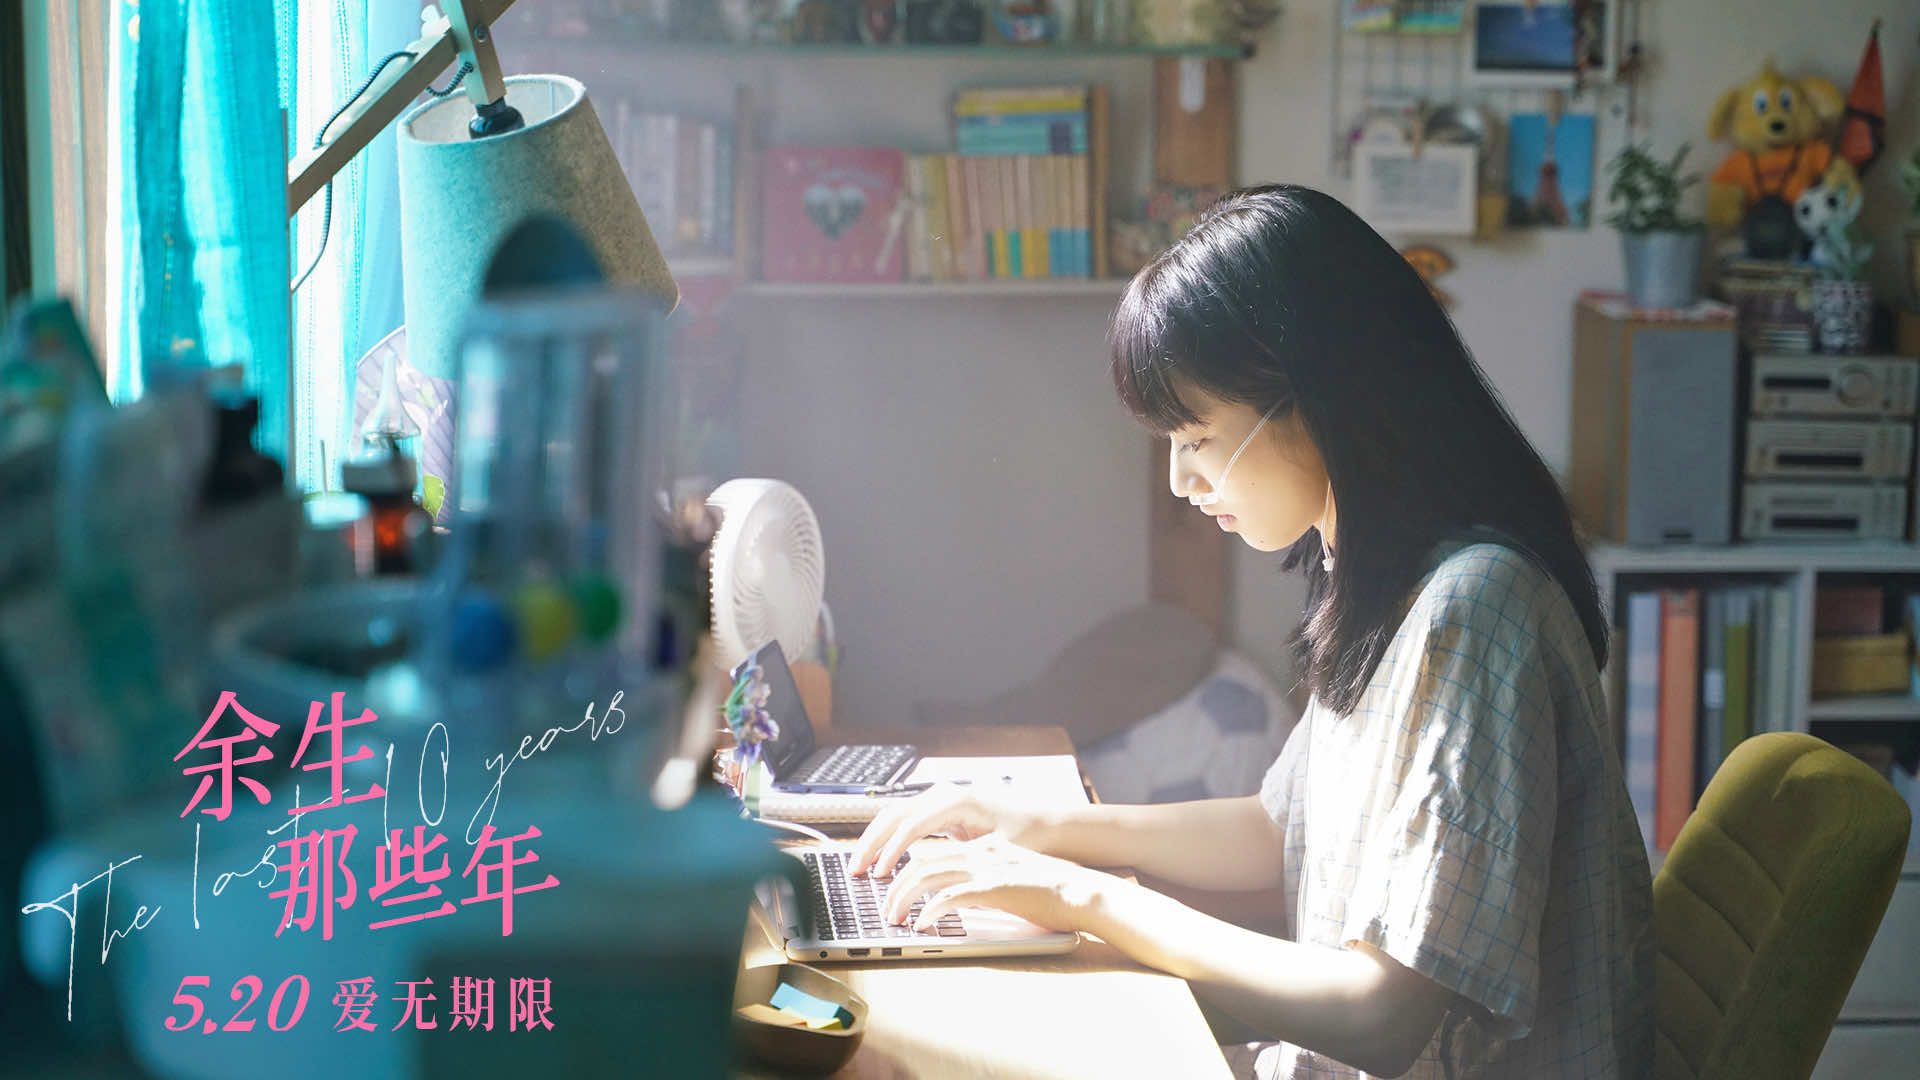 电影《余生那些年》发布主题曲短片 小松菜奈坂口健太郎回忆心动时刻 - 360娱乐，你开心就好